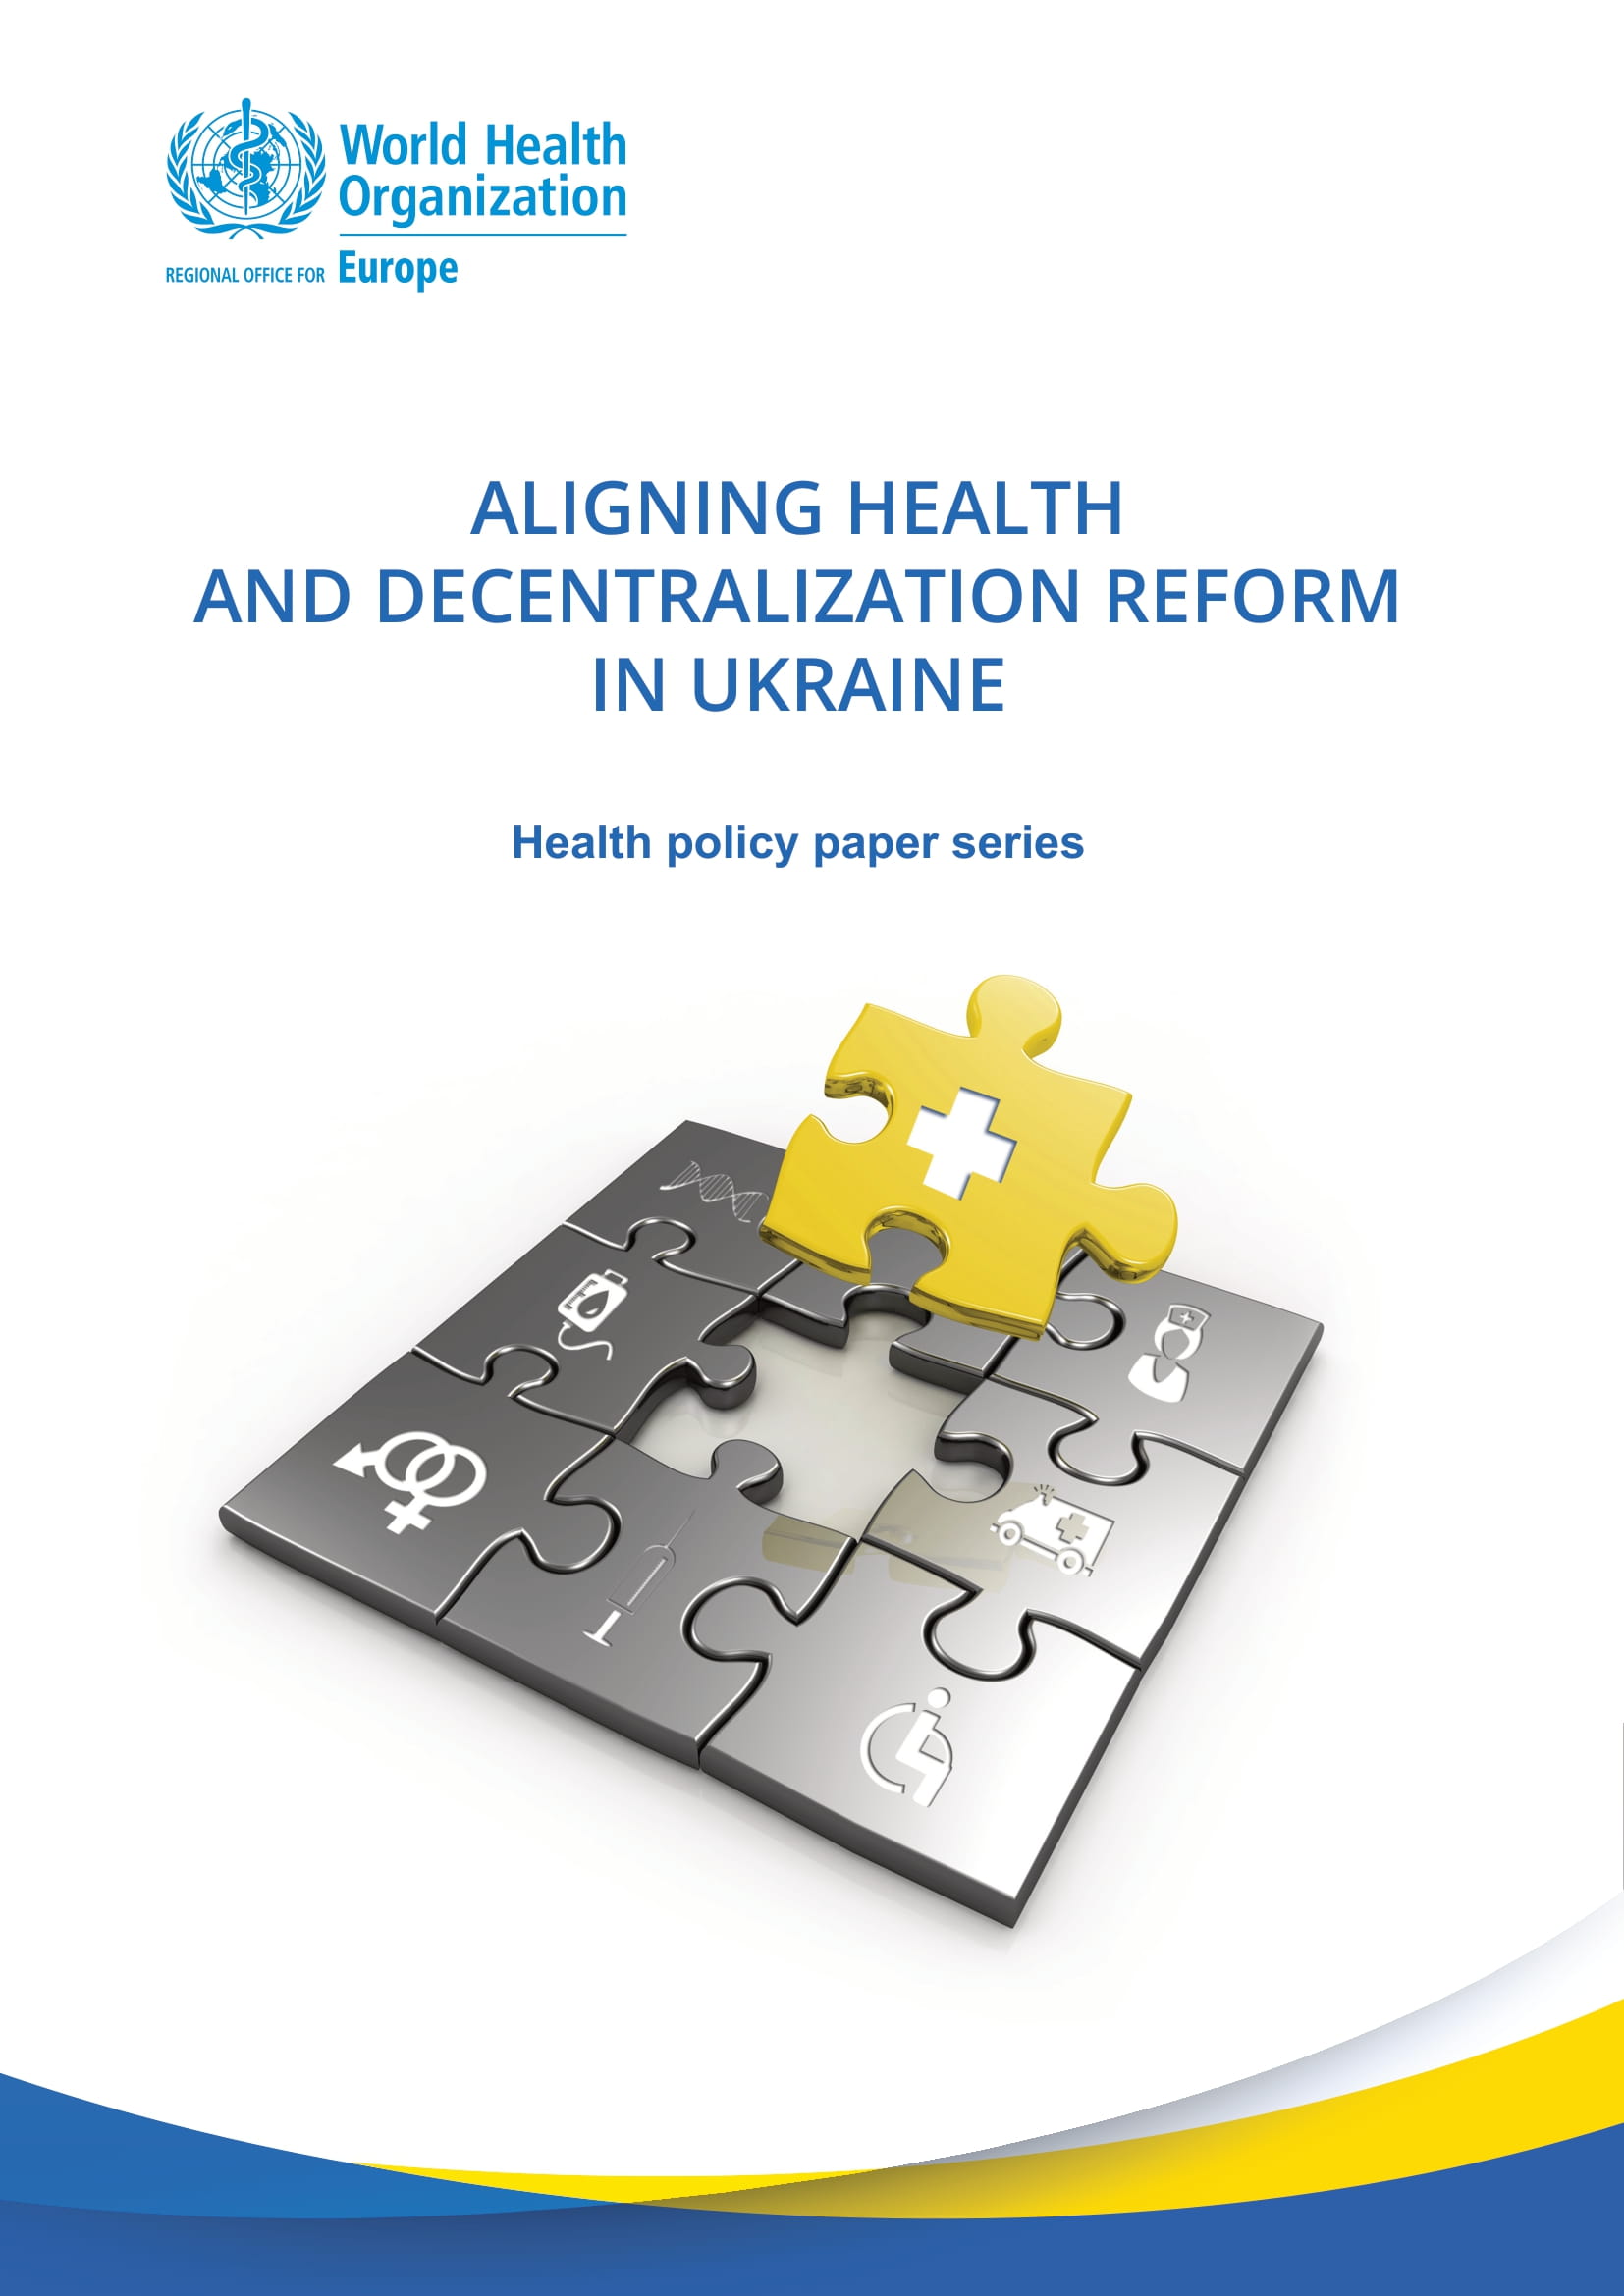 Publicado un nuevo informe sobre la armonización de la reforma sanitaria y la descentralización en Ucrania